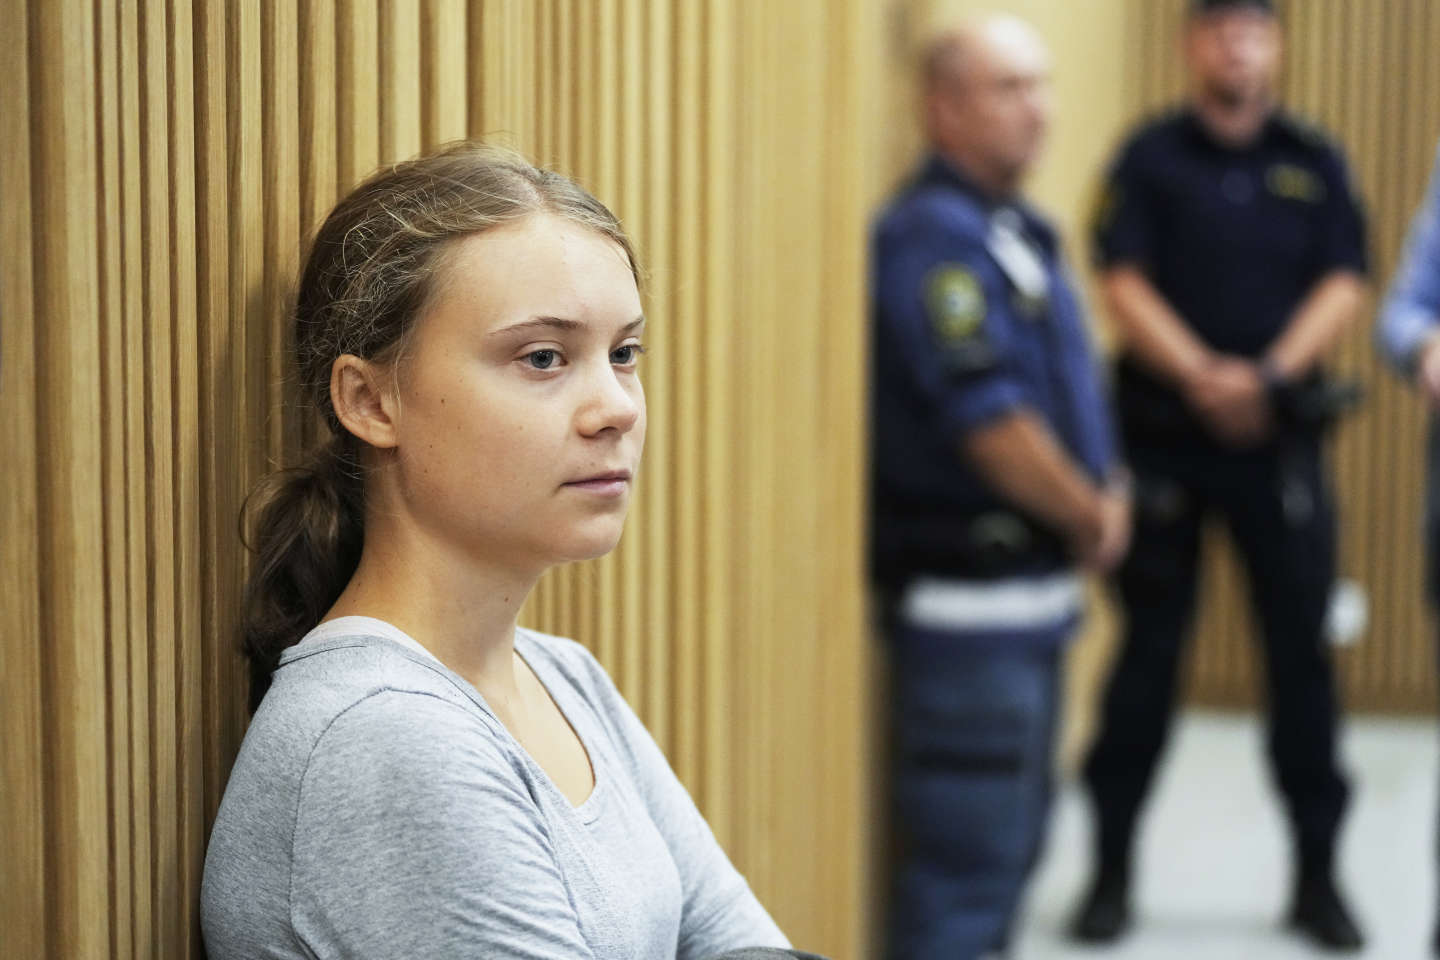 Greta Thunberg condamnée en Suède pour avoir désobéi à la police